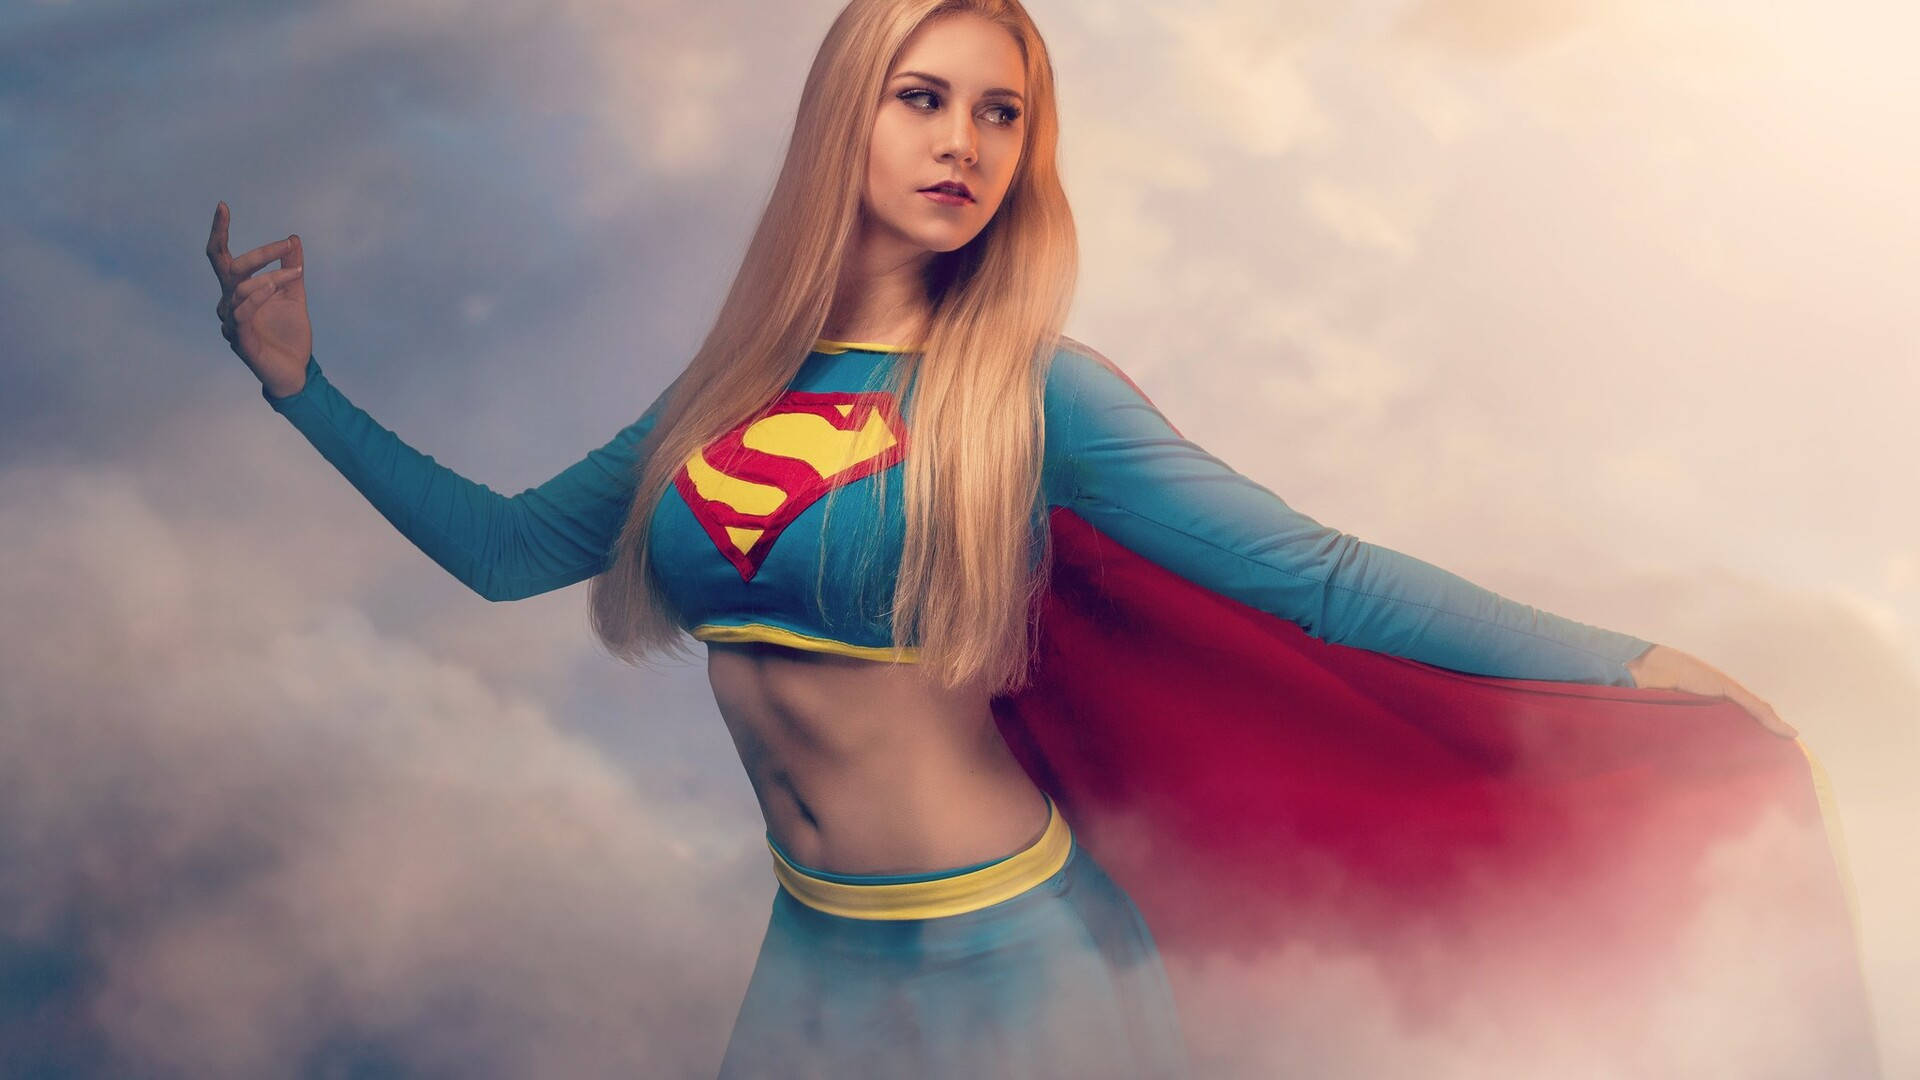 Chicarubia Atractiva En Traje De Heroína De Supergirl. Fondo de pantalla